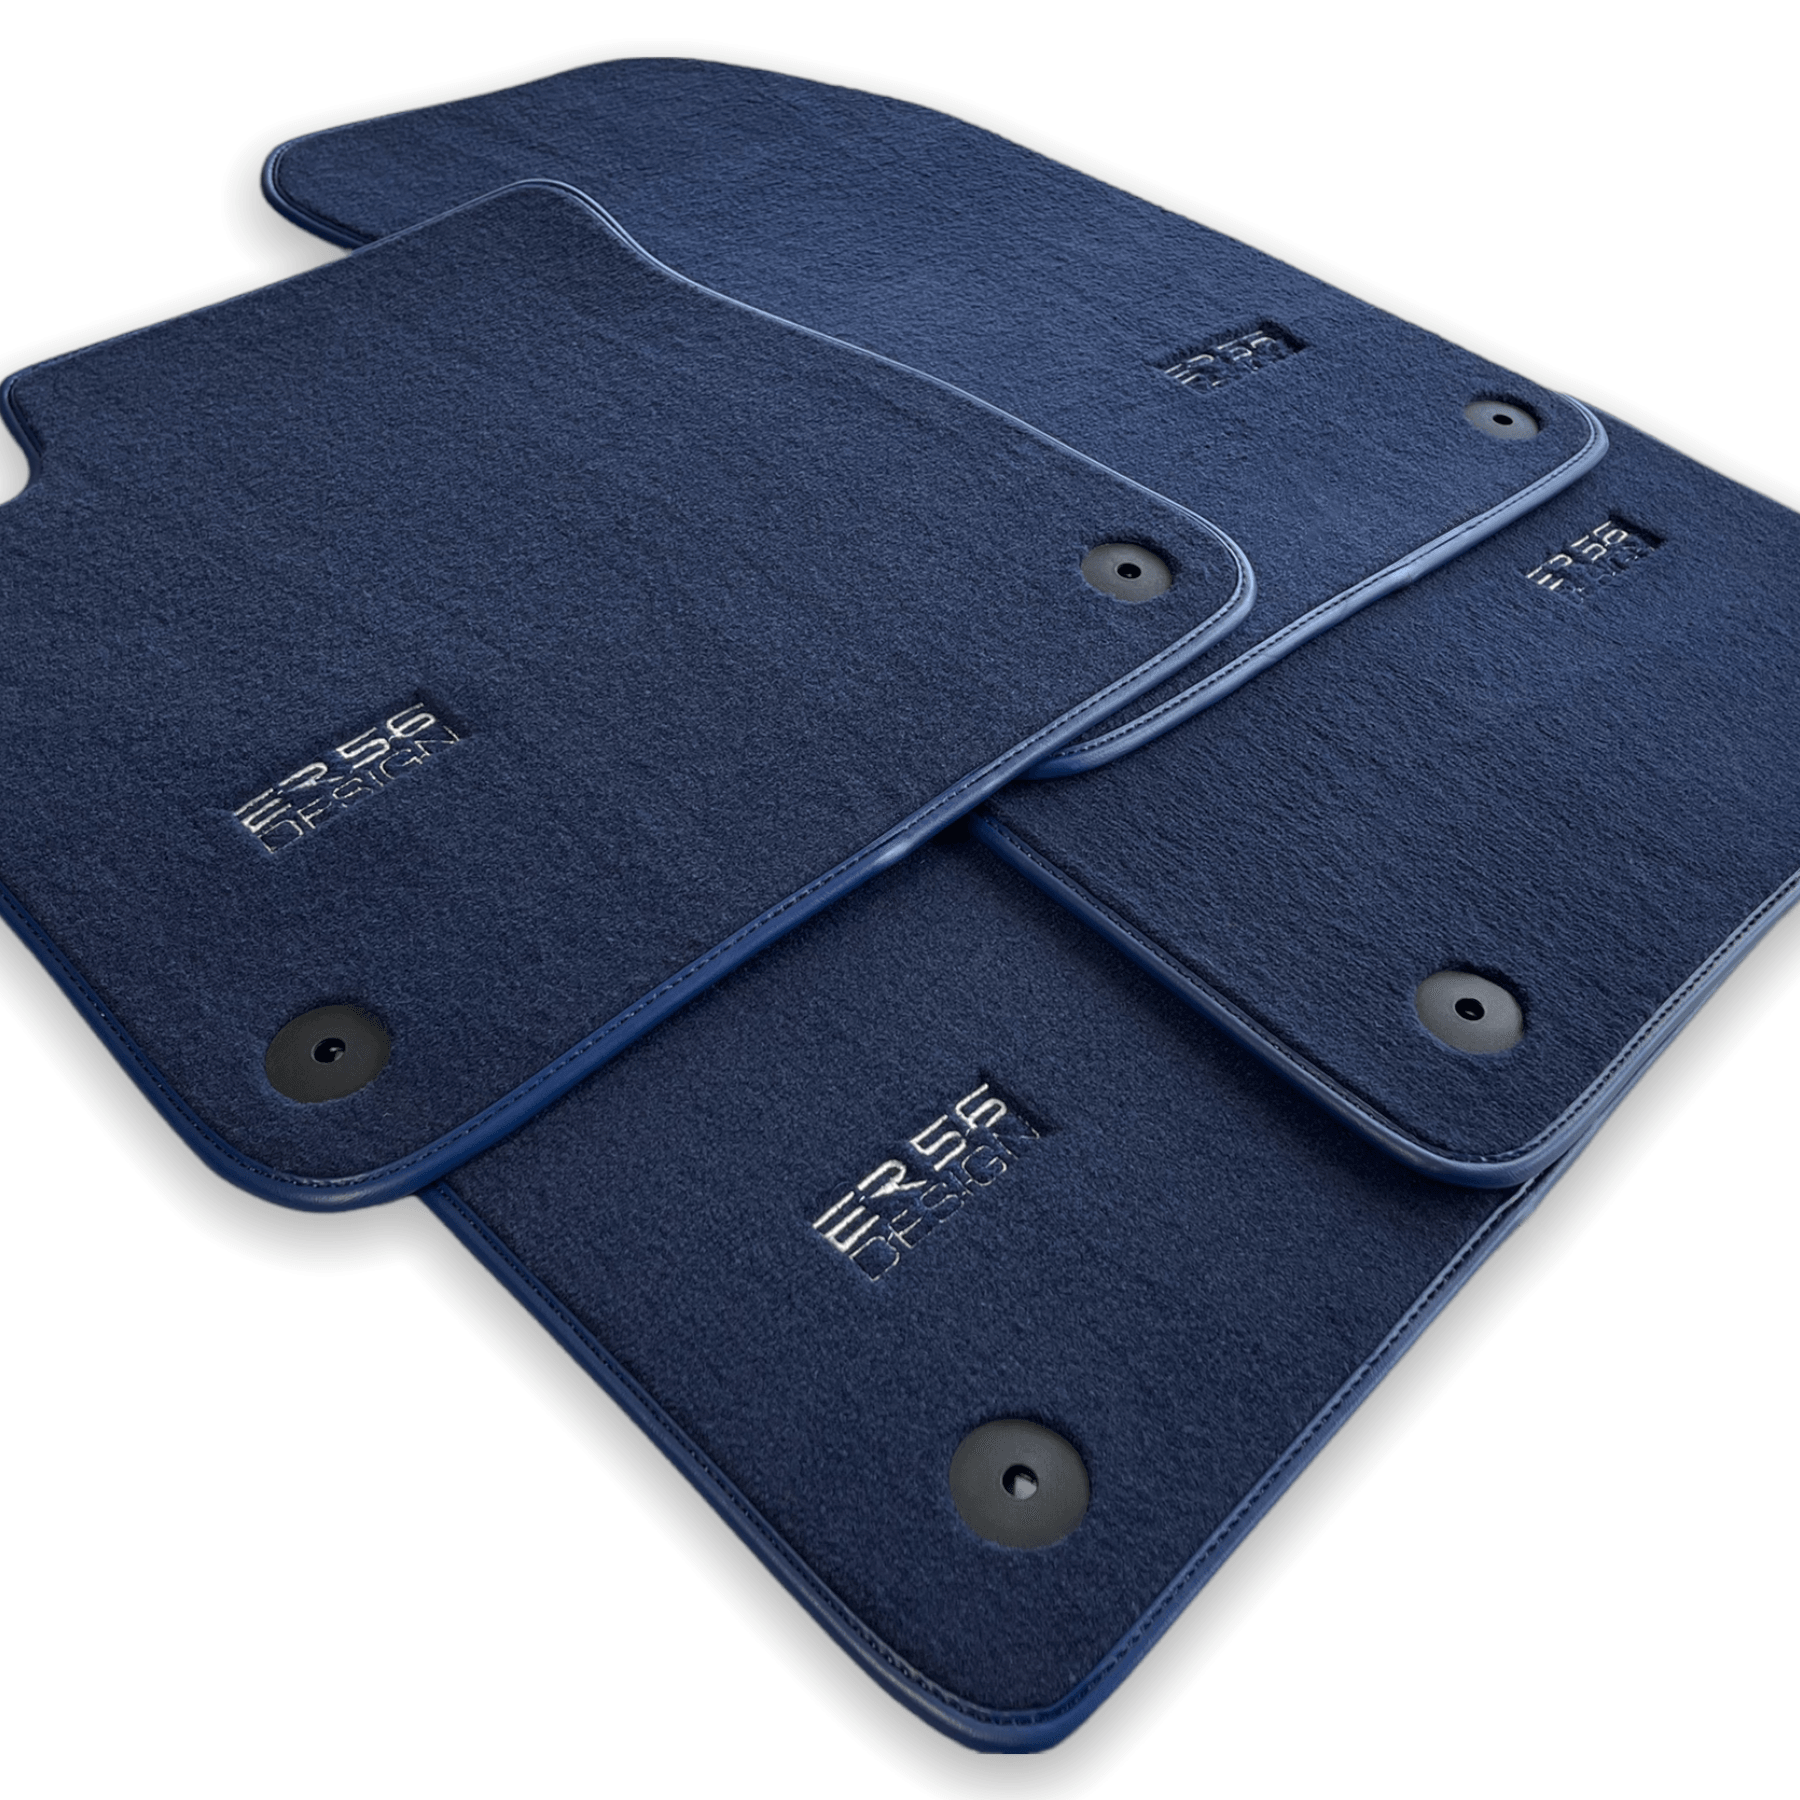 Dark Blue Floor Mats for Audi A5 - 8TA Sportback (2009-2017) | ER56 Design